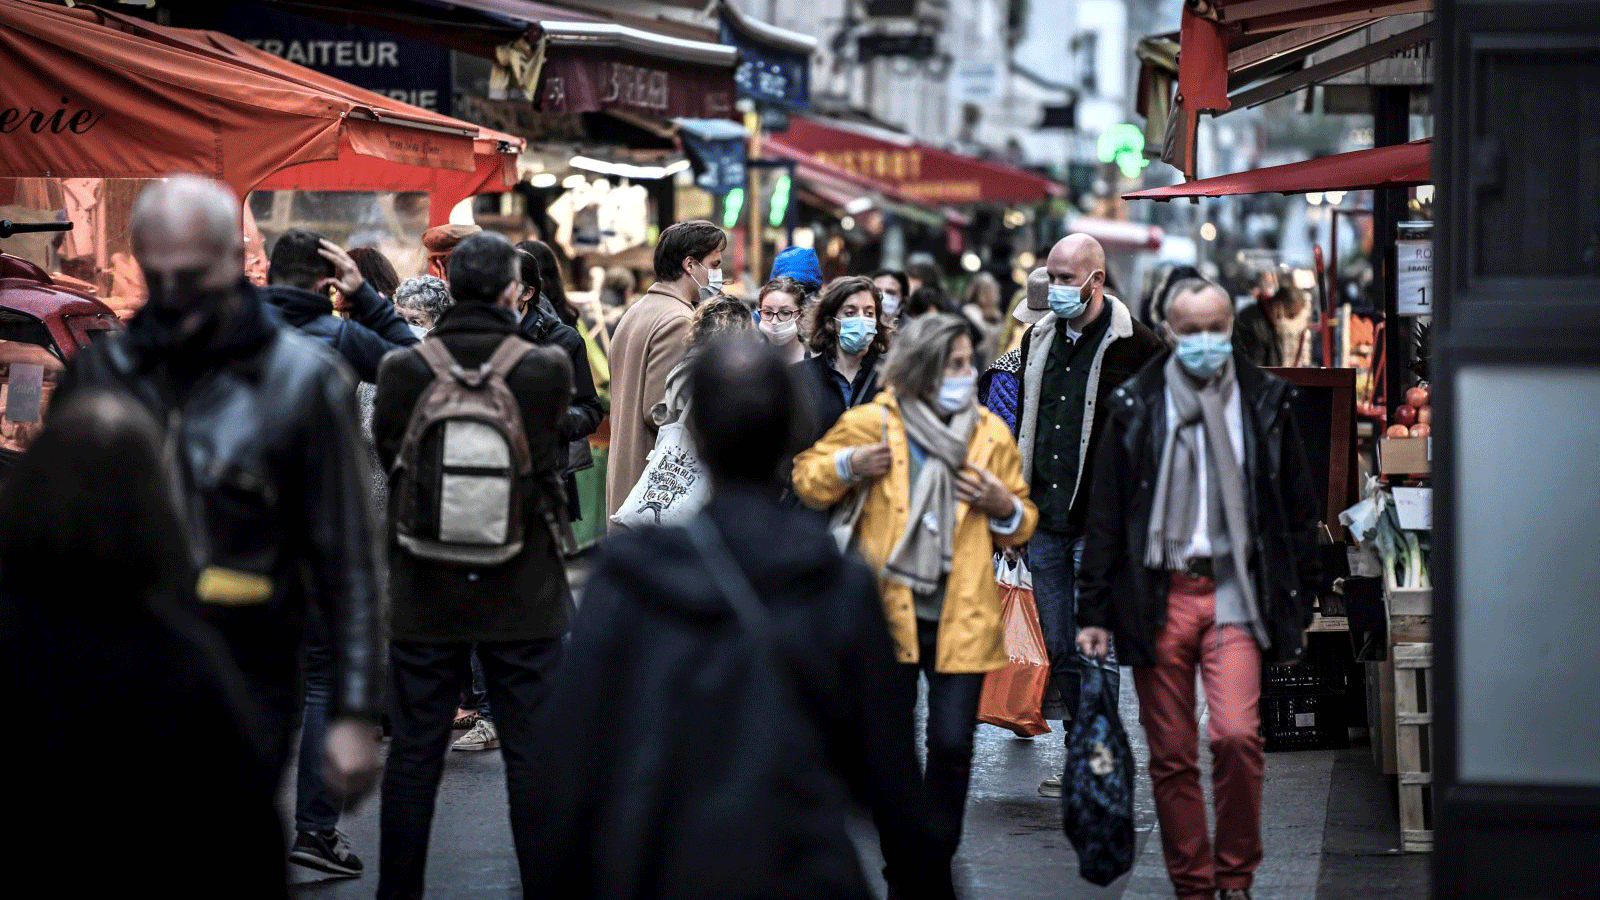  أشخاص يرتدون أقنعة، يتسوقون في باريس في اليوم الثاني من الإغلاق الوطني العام الثاني من قبل الحكومة الفرنسية لاحتواء انتشار COVID-19، فرنسا، 31 تشرين الأول/ أكتوبر 2020.